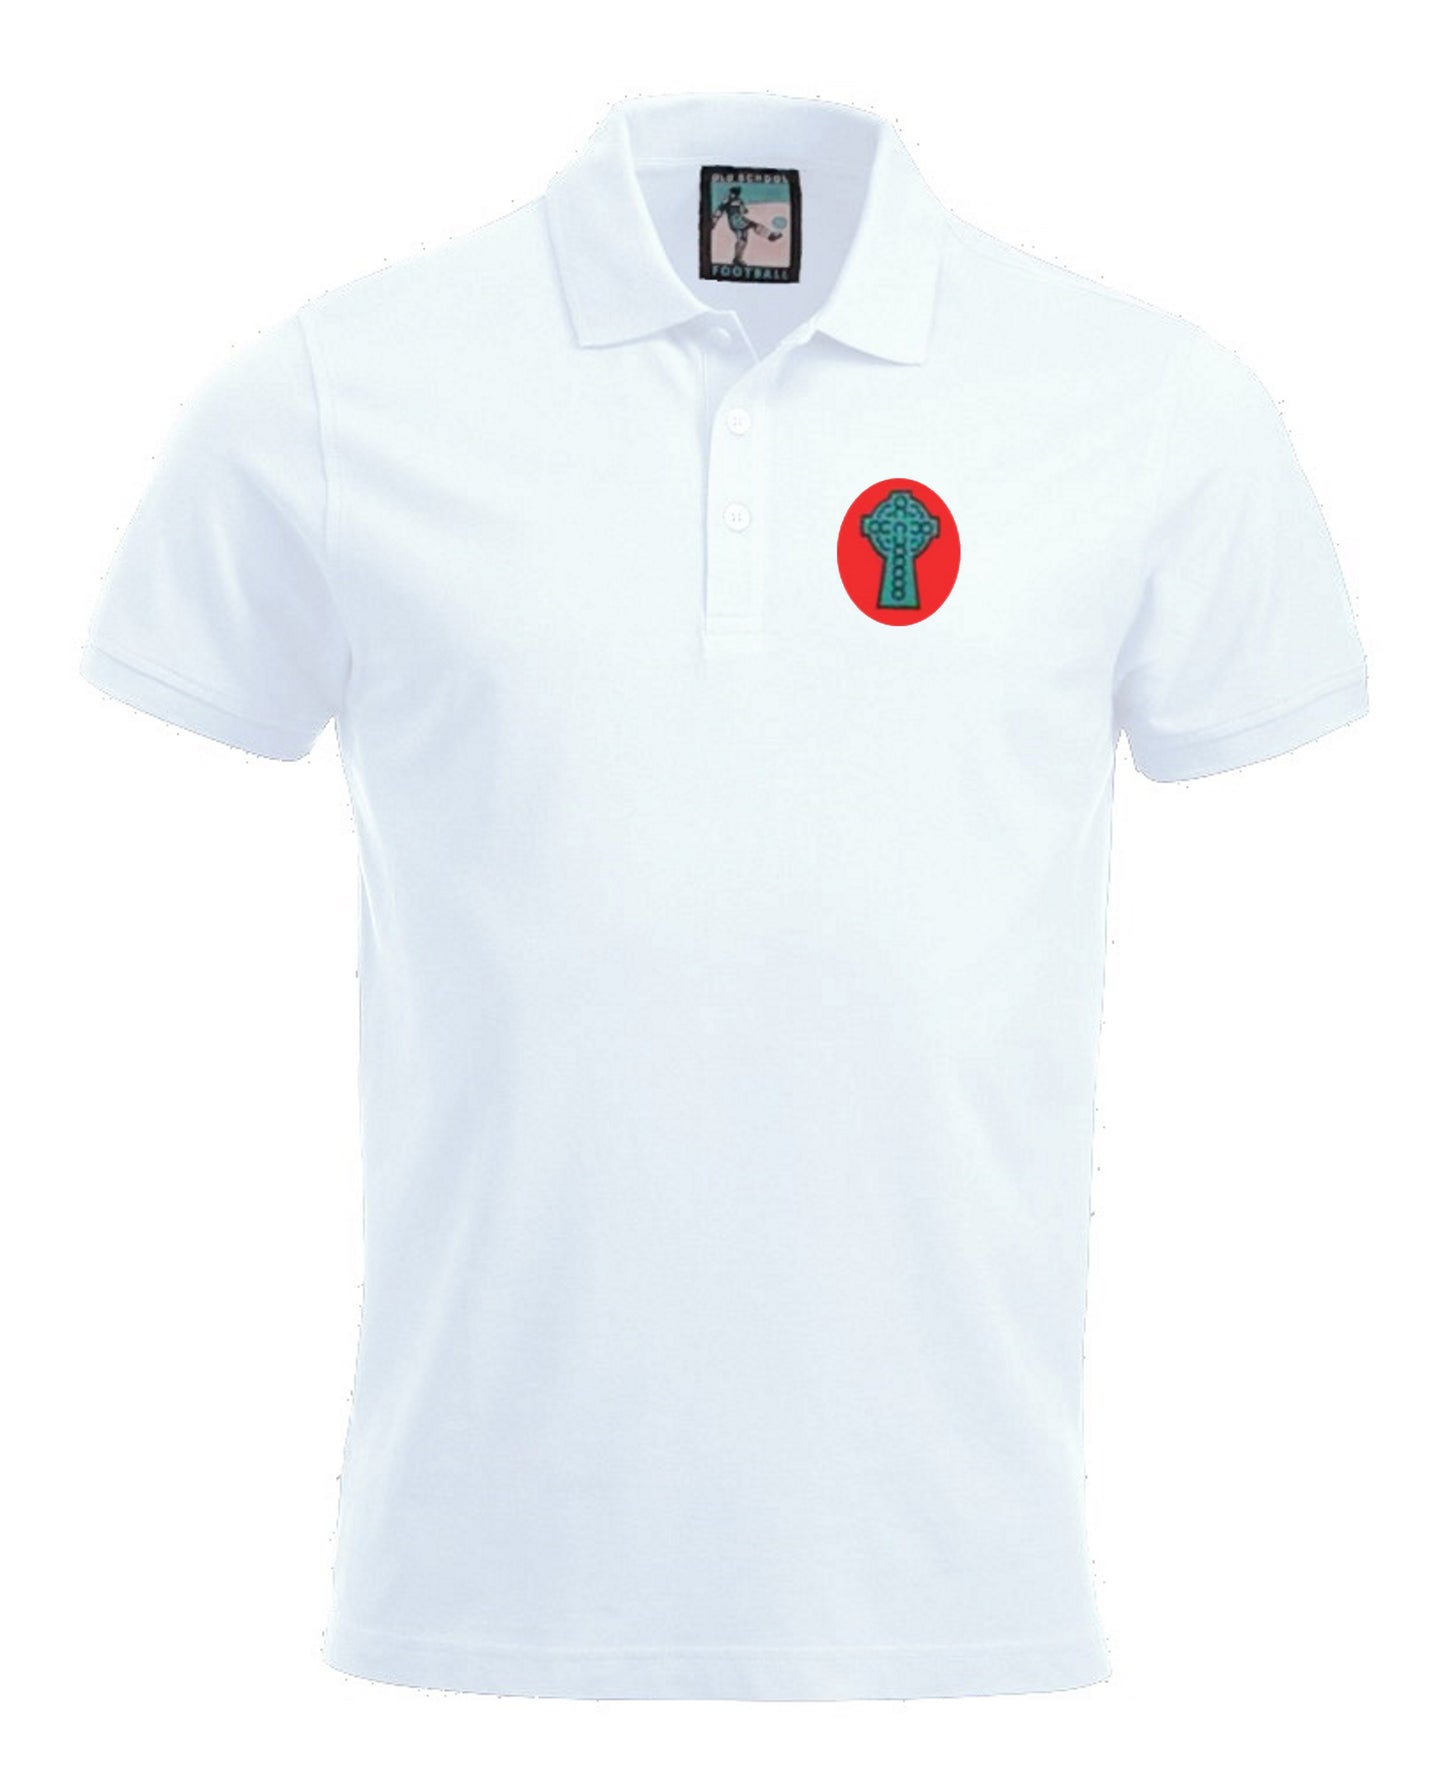 Celtic Retro Football Polo Shirt 1890 - Polo